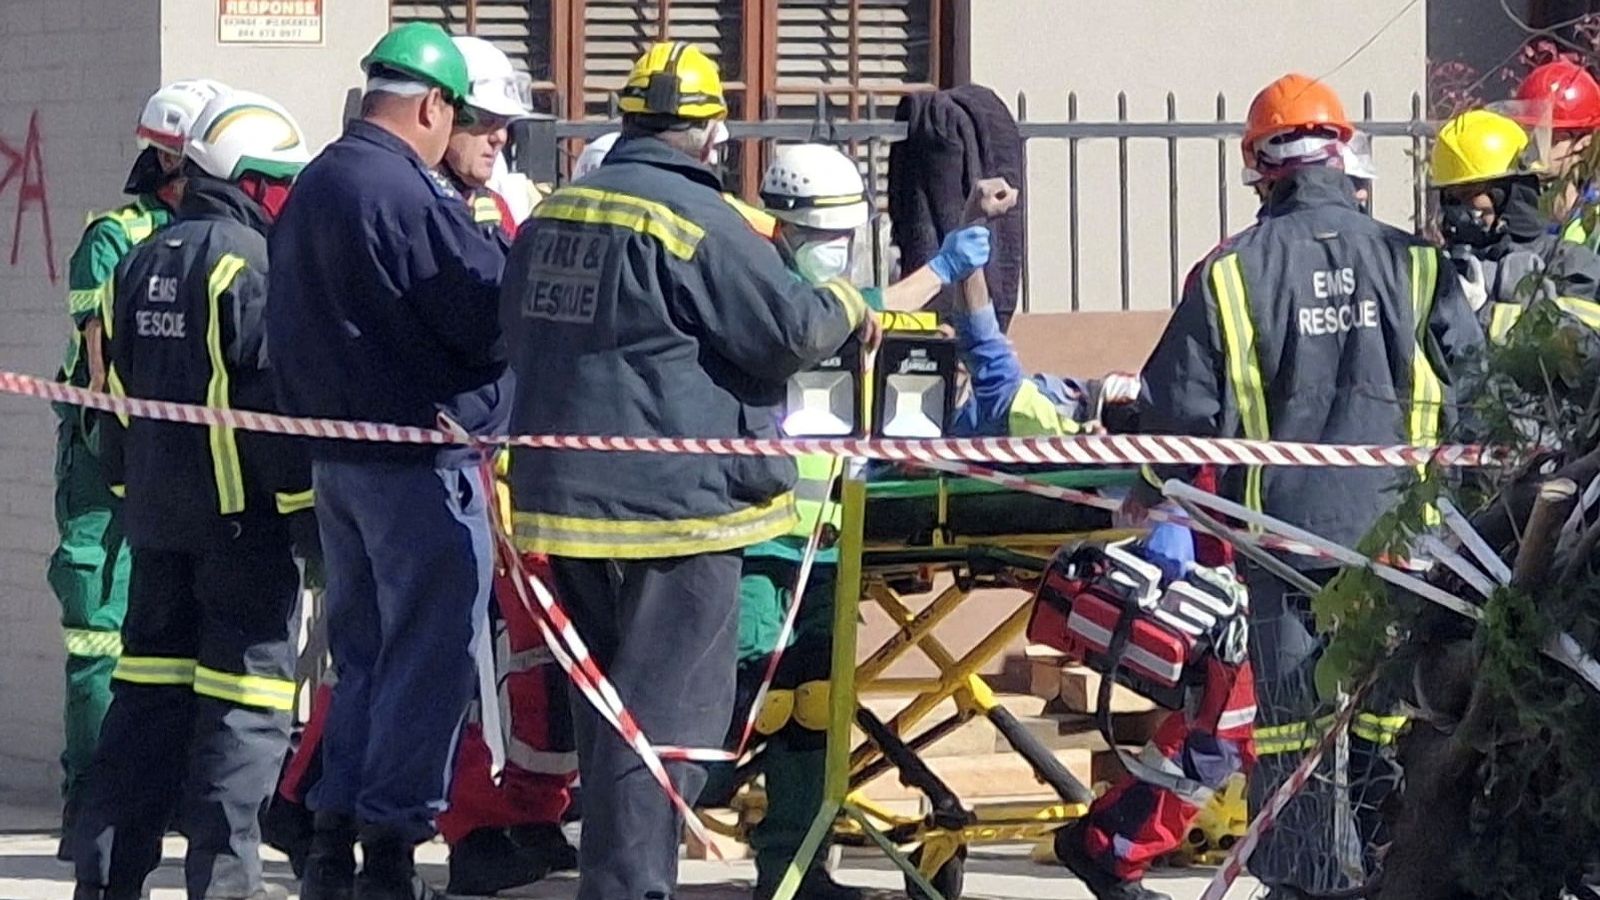 ЮАР: Мужчину спасли из обрушившегося здания в Джордже спустя пять дней |  Новости мира